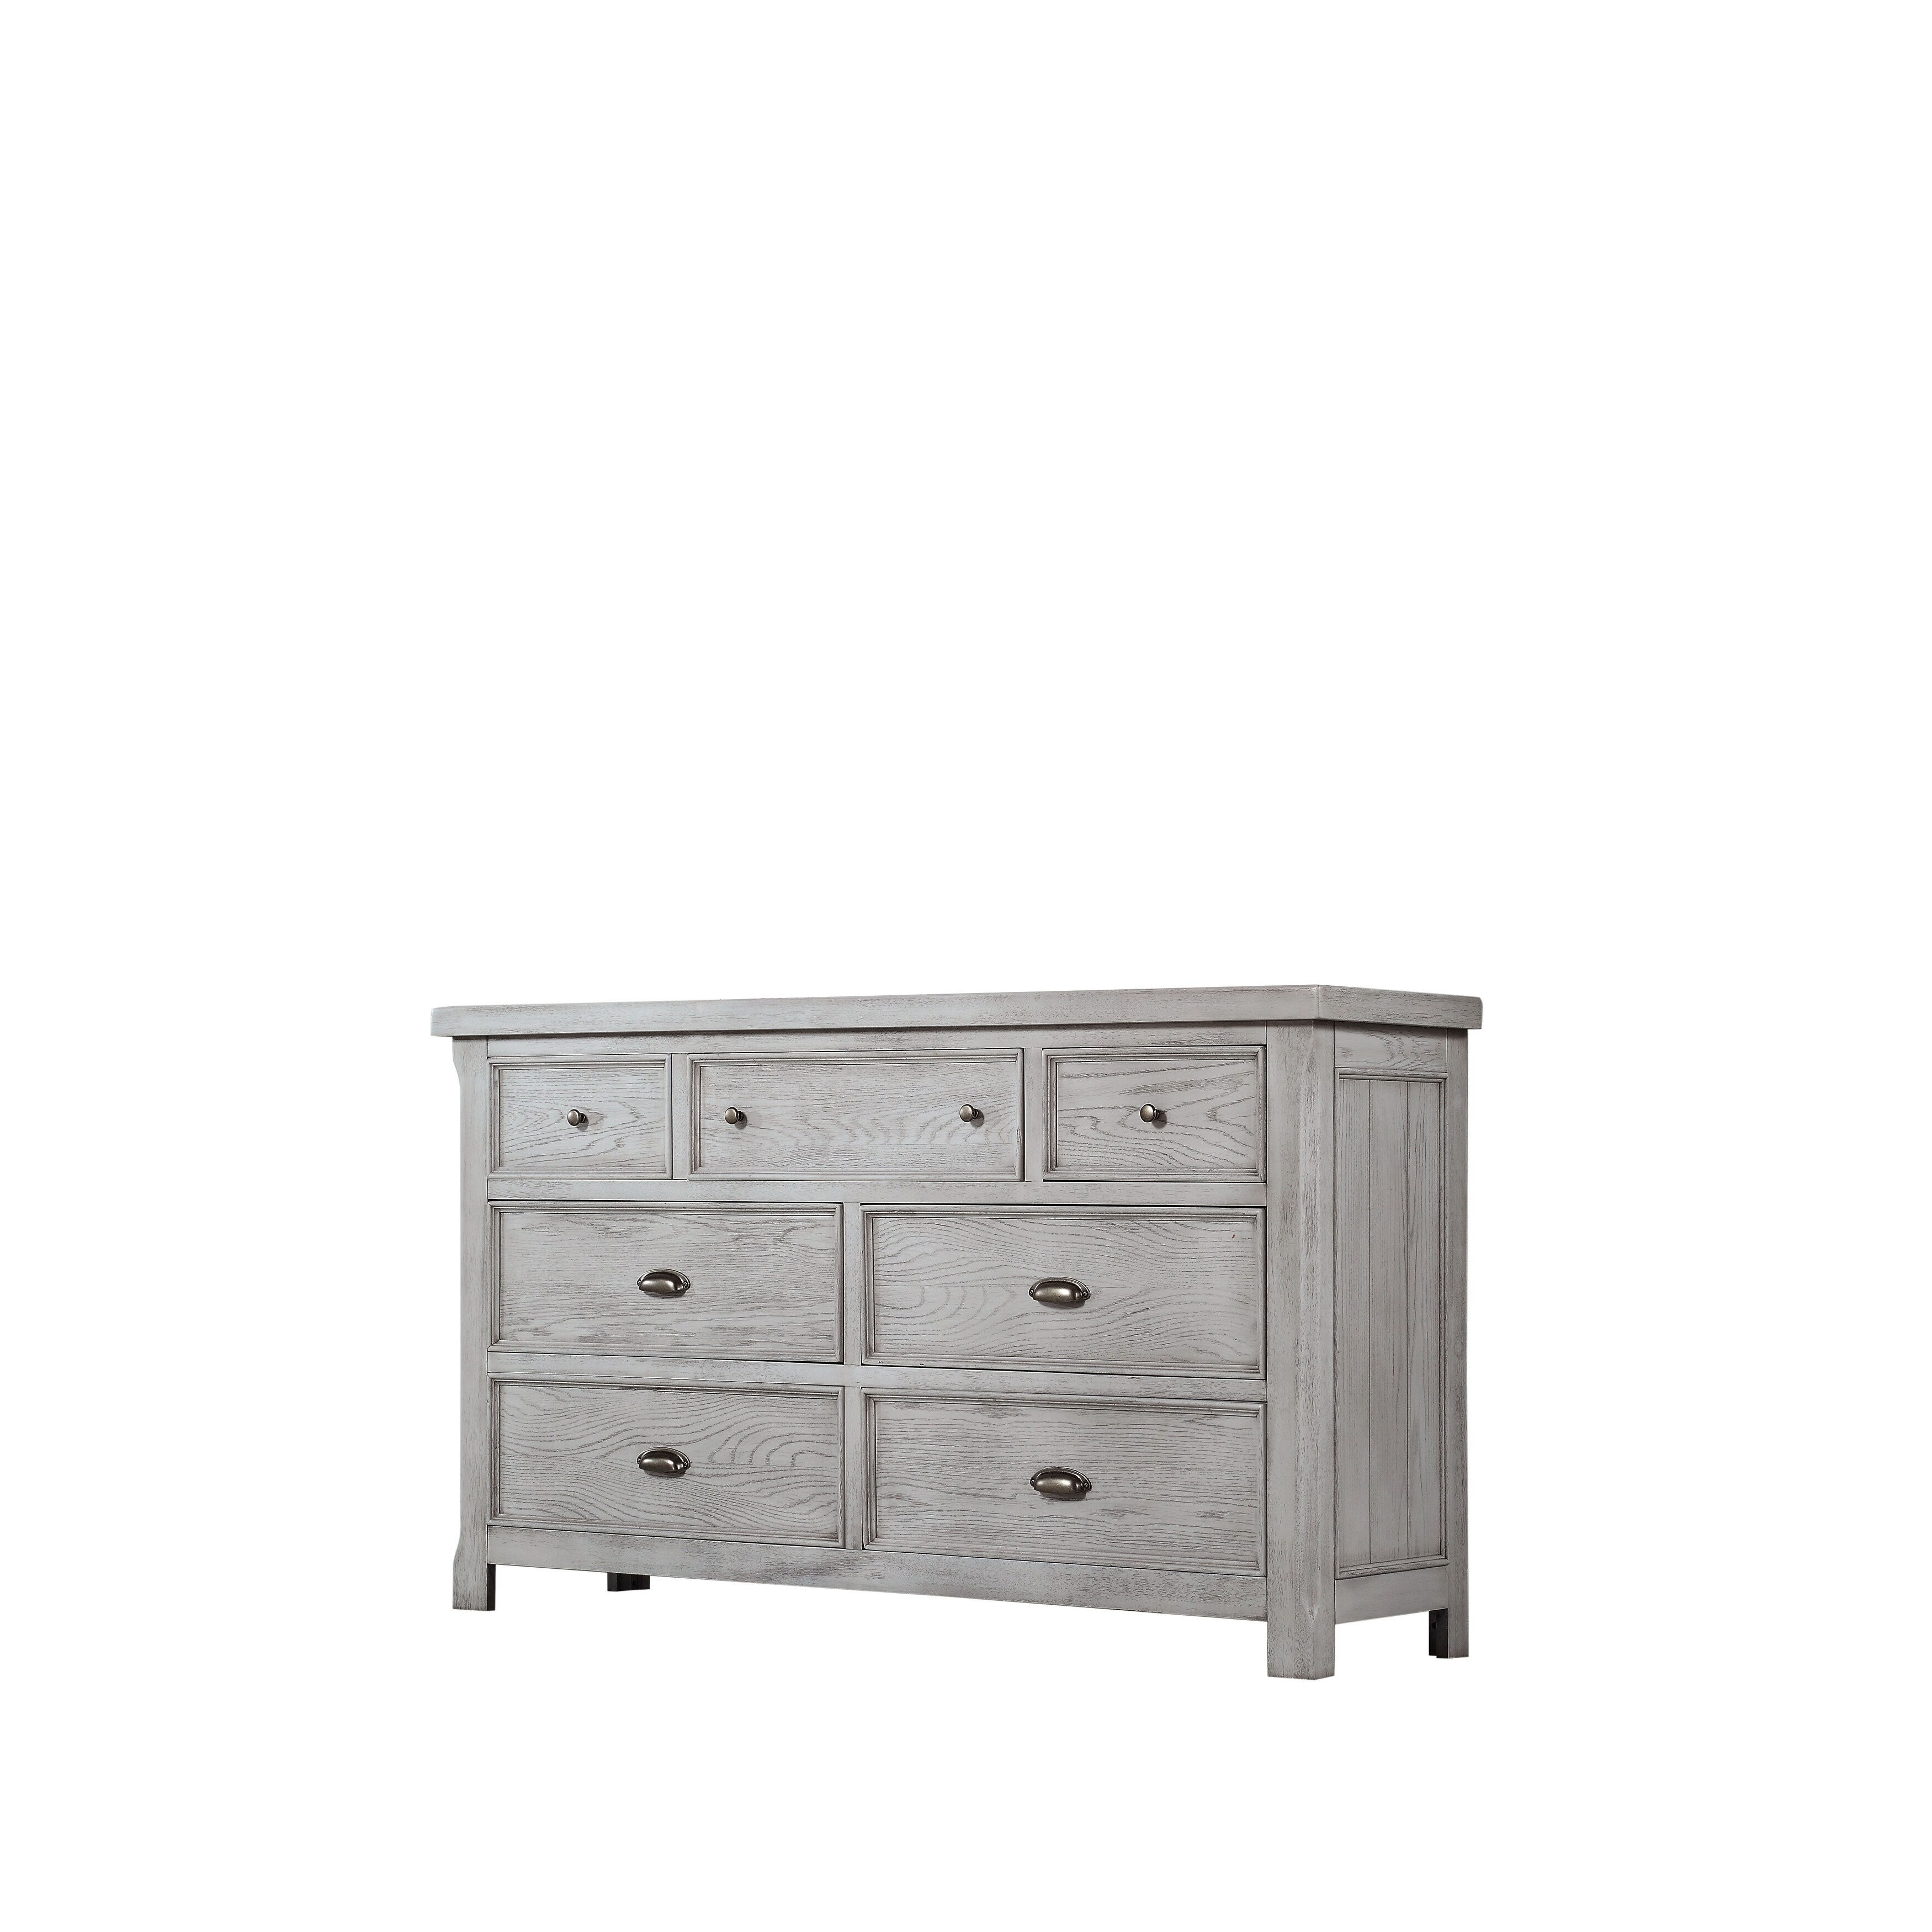 Light Grey Wood Dresser Dresser